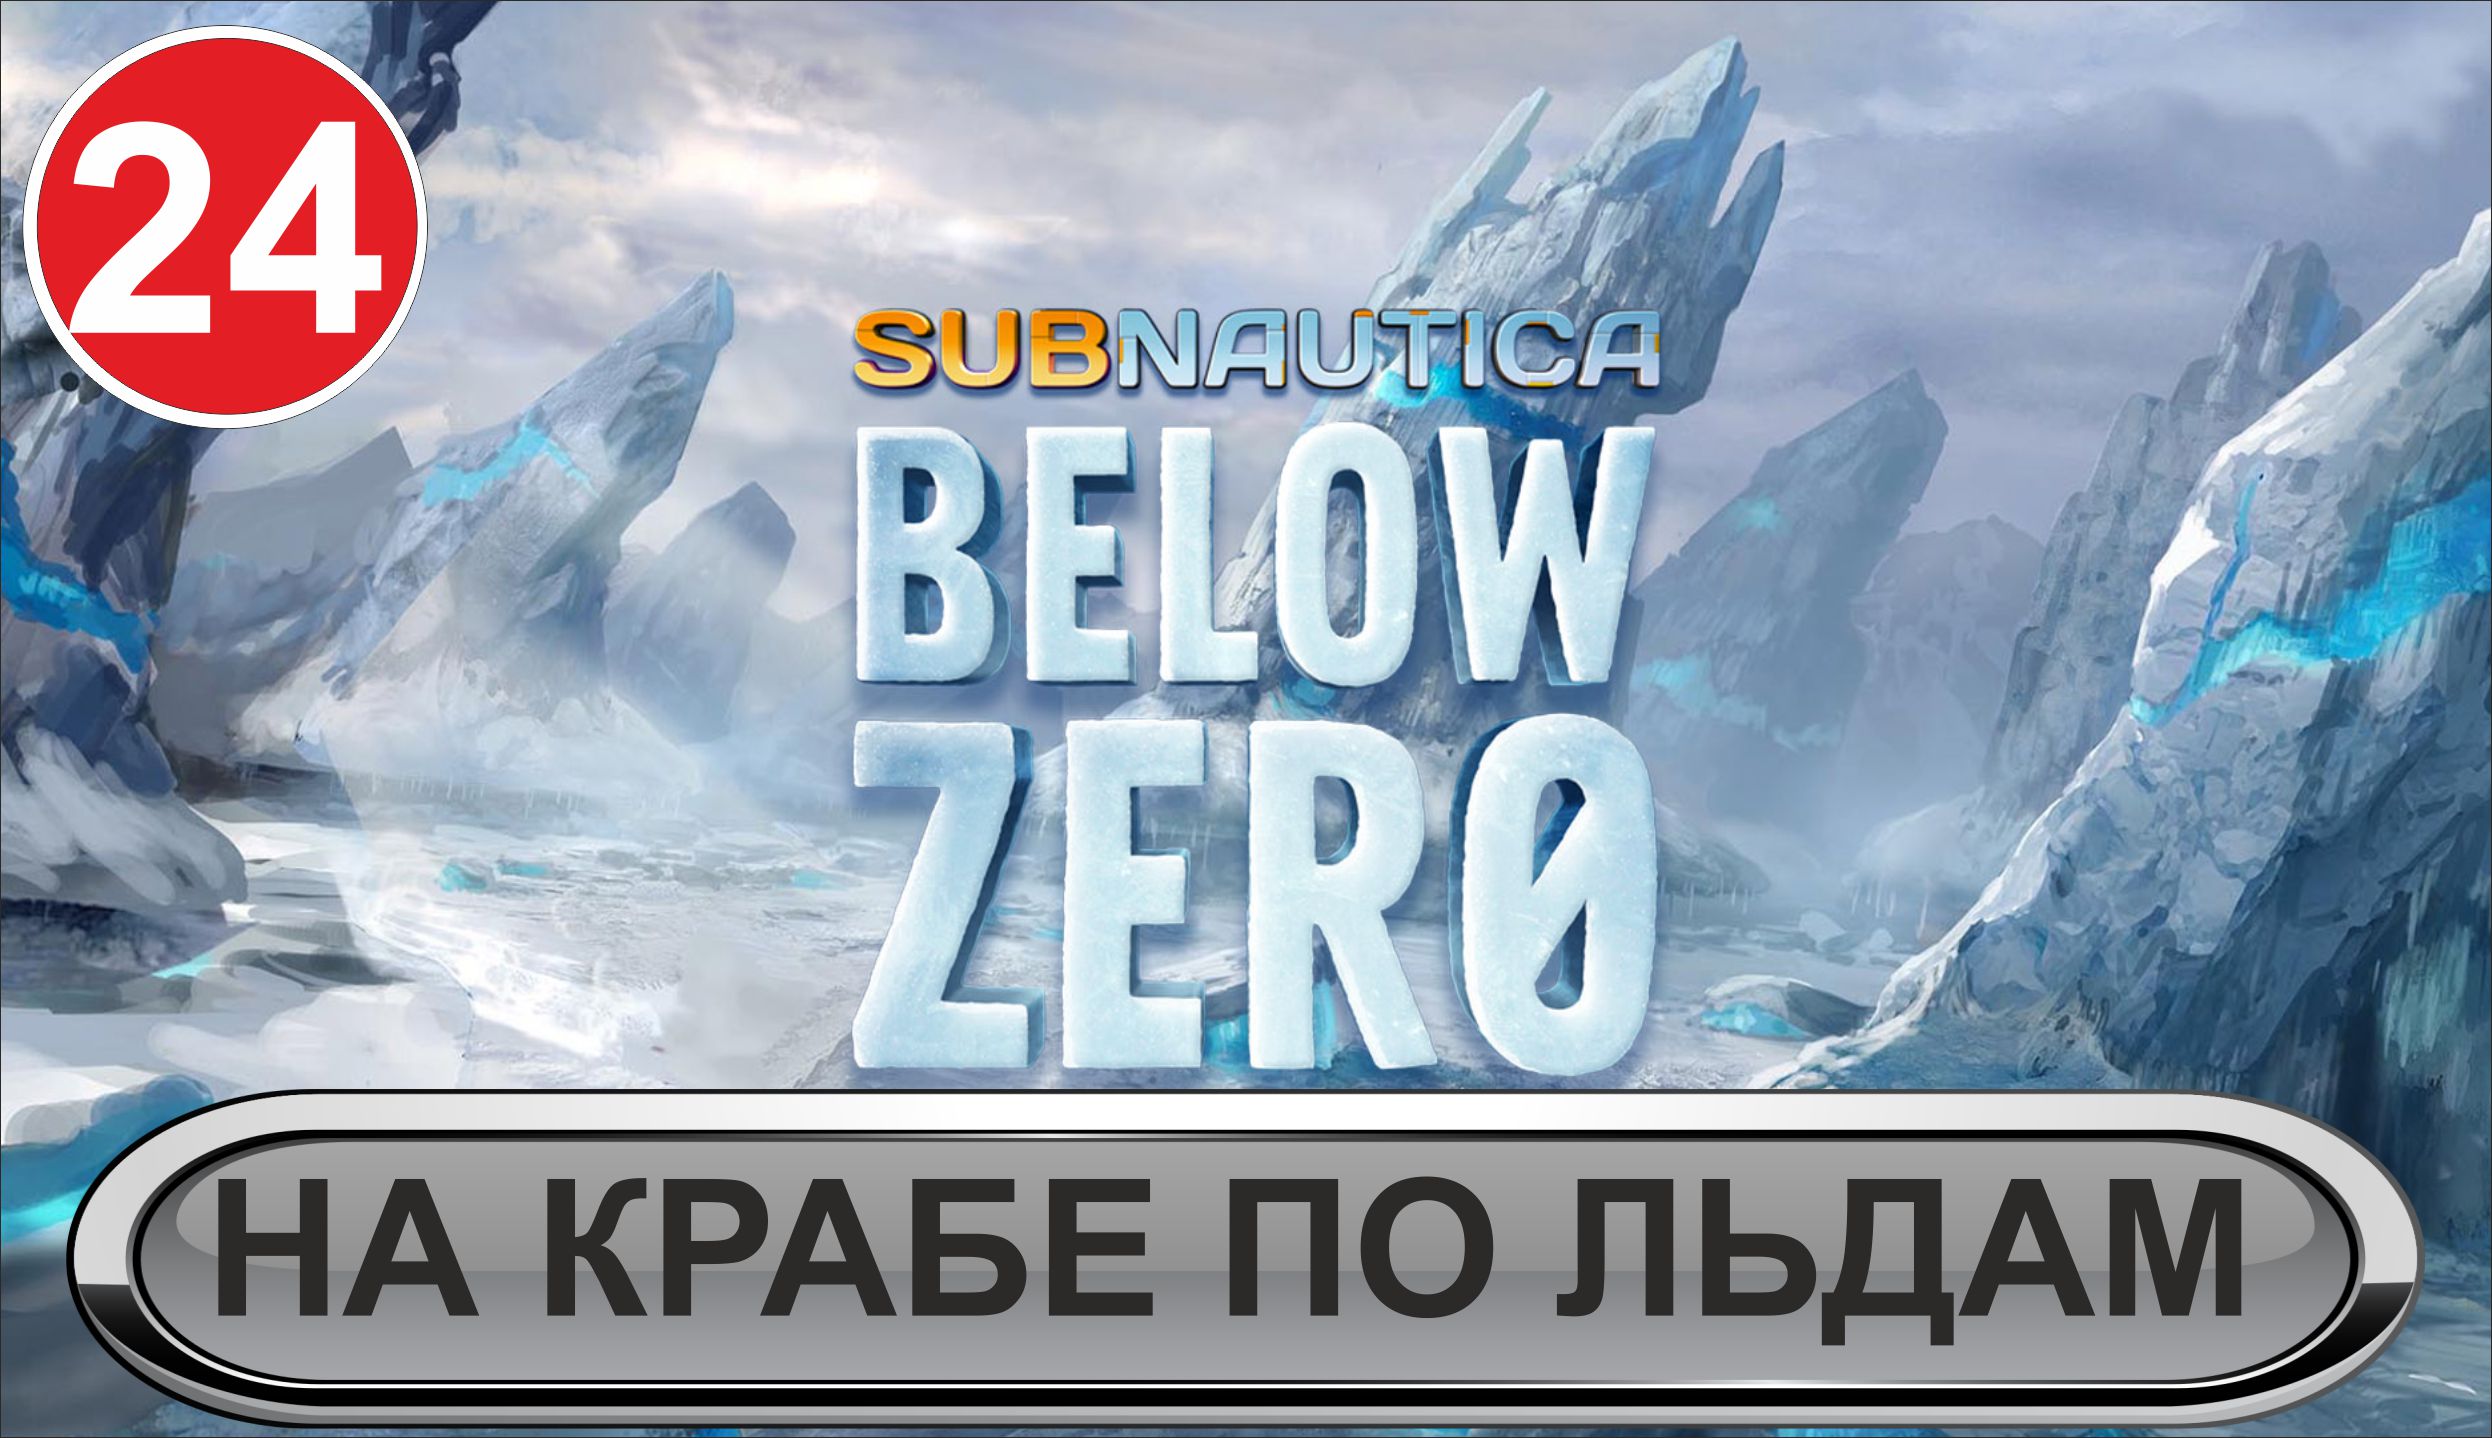 Subnautica: Below Zero - На Крабе по льдам